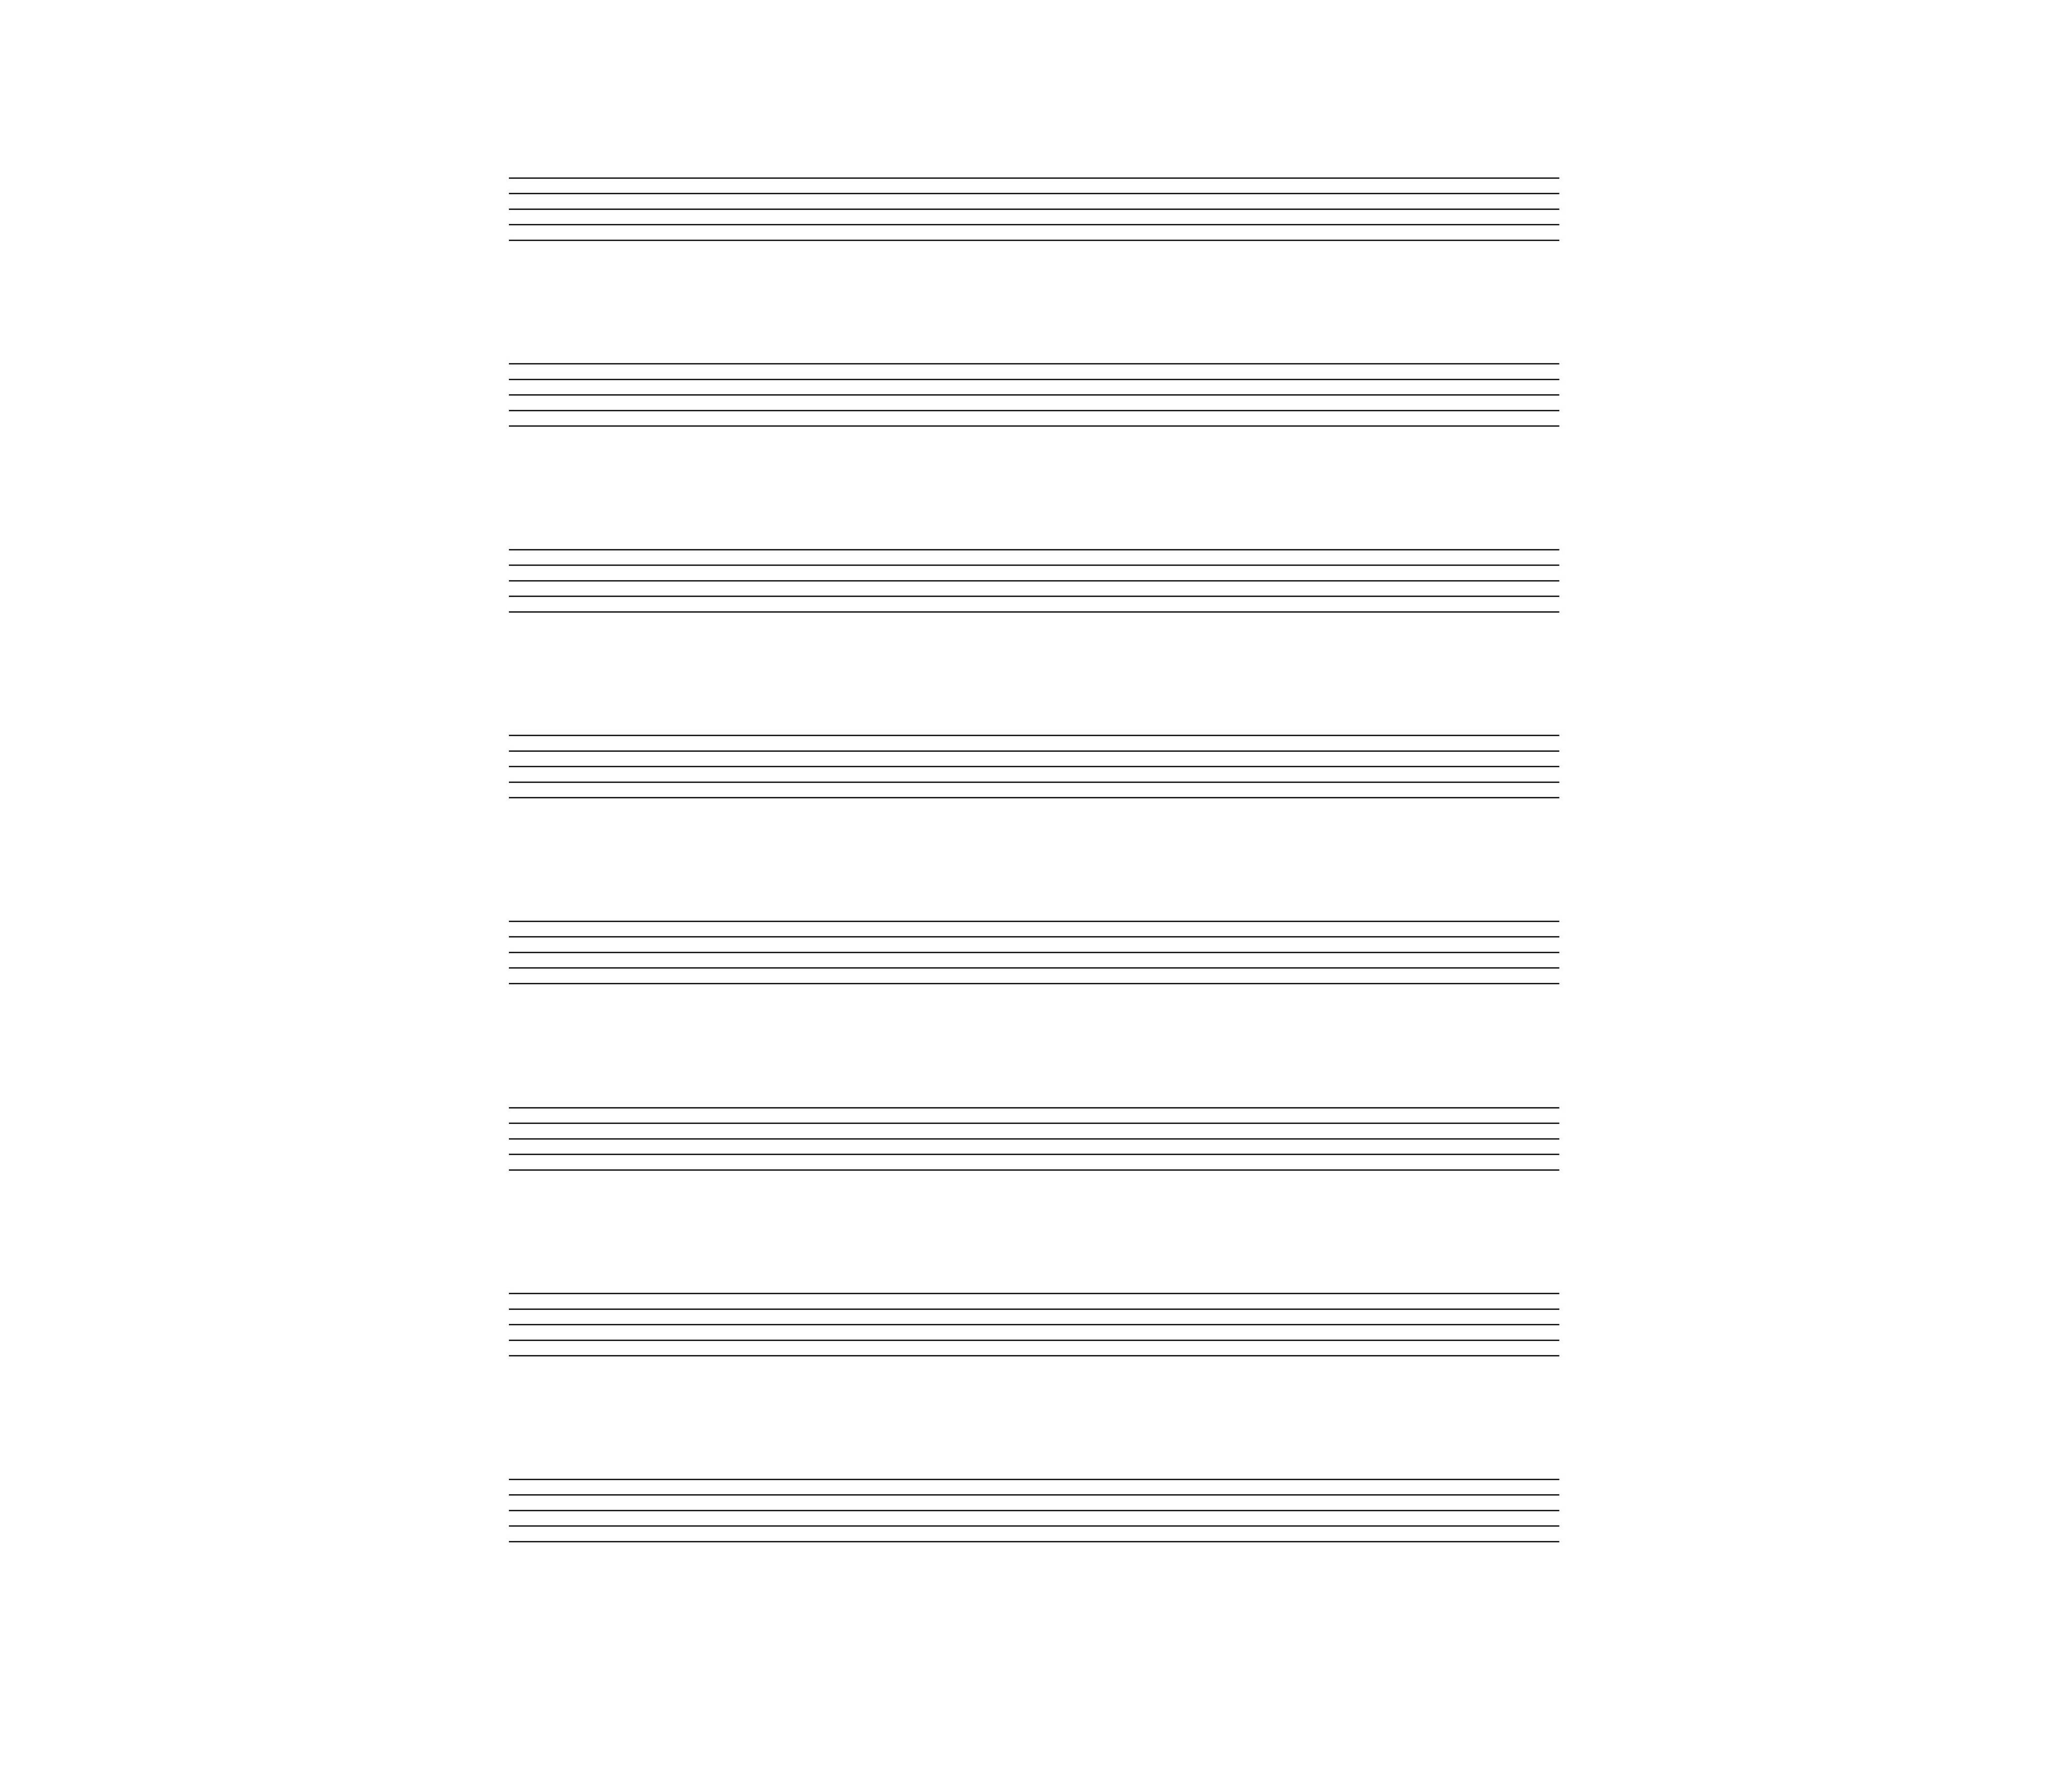 Partition Vierge et Papier Musique Gratuit en PDF - La Touche Musicale